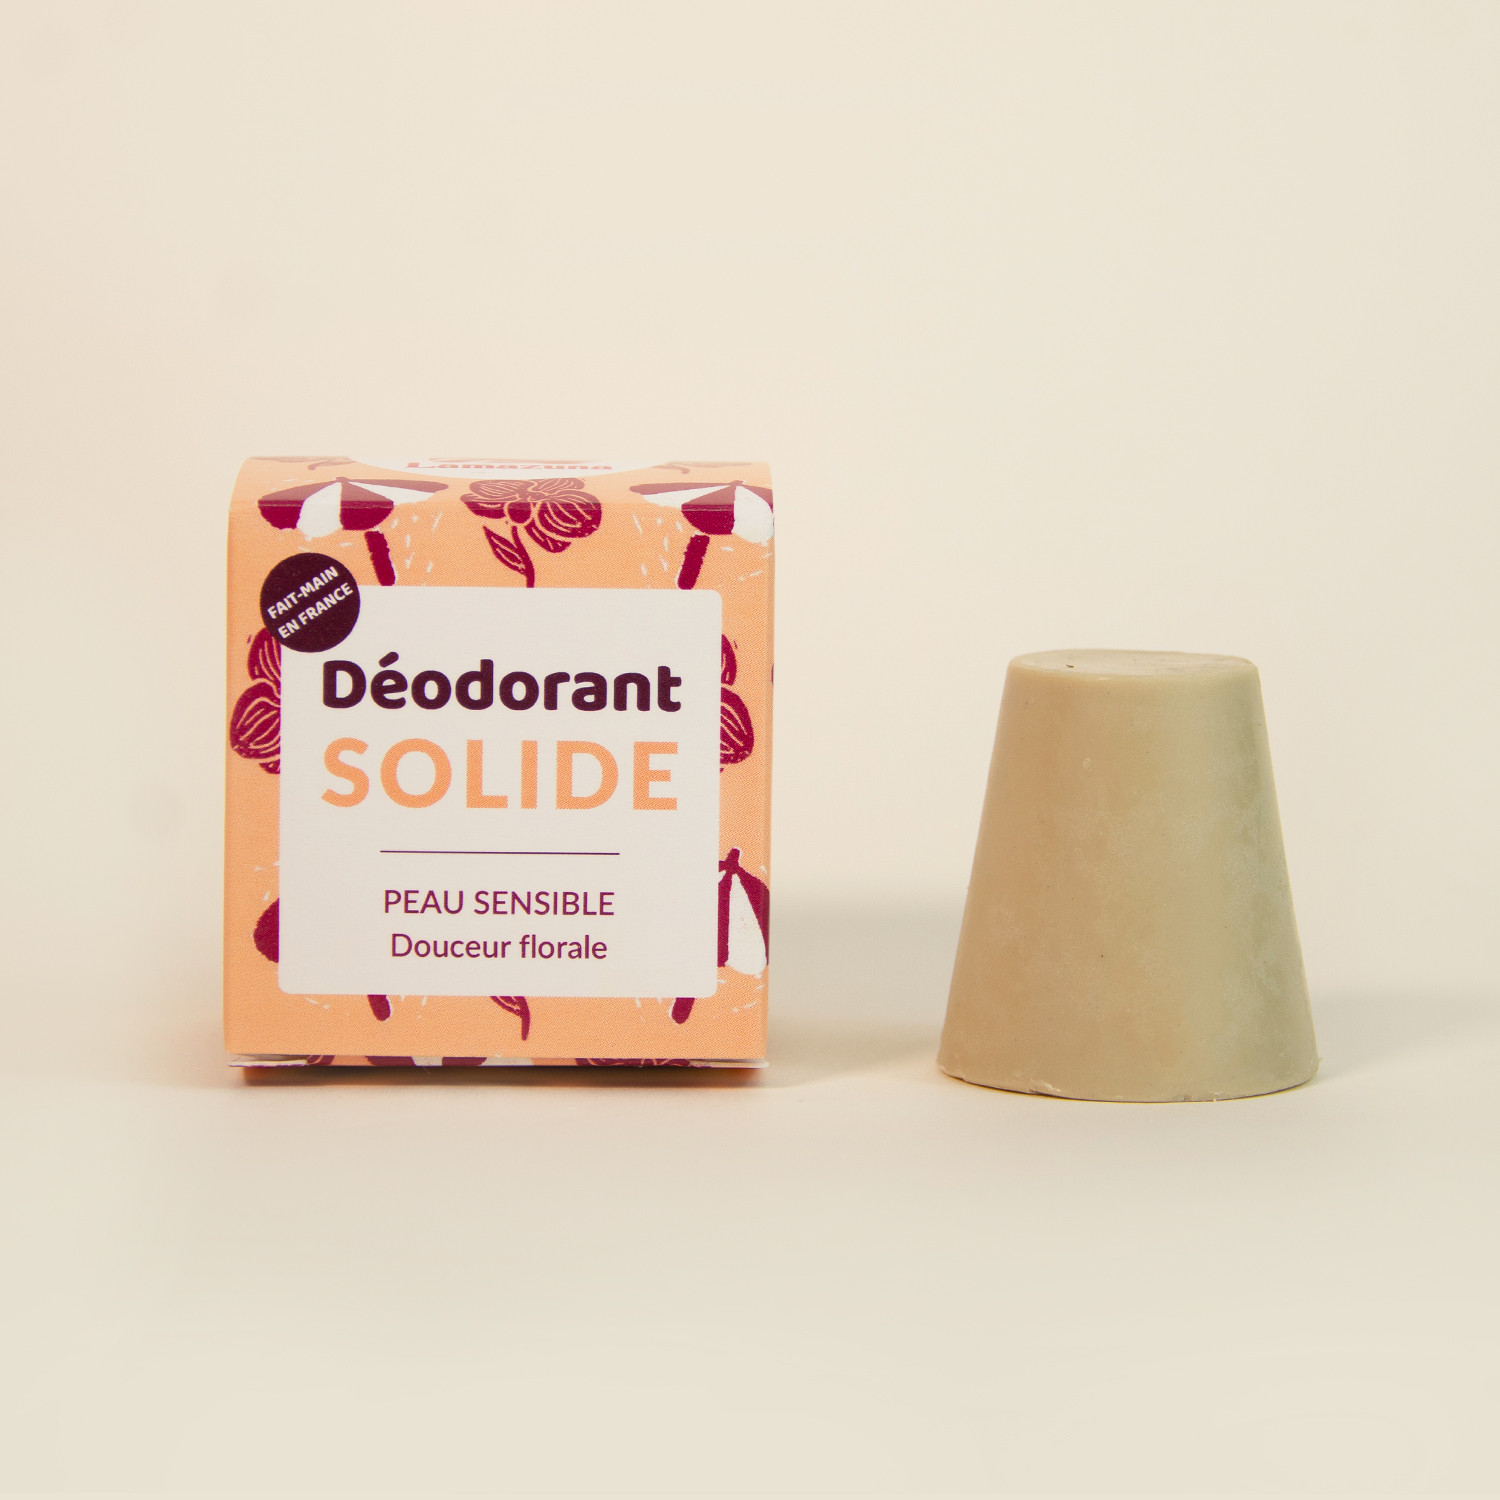 Deodorant for sensitive skin - soft floral scent